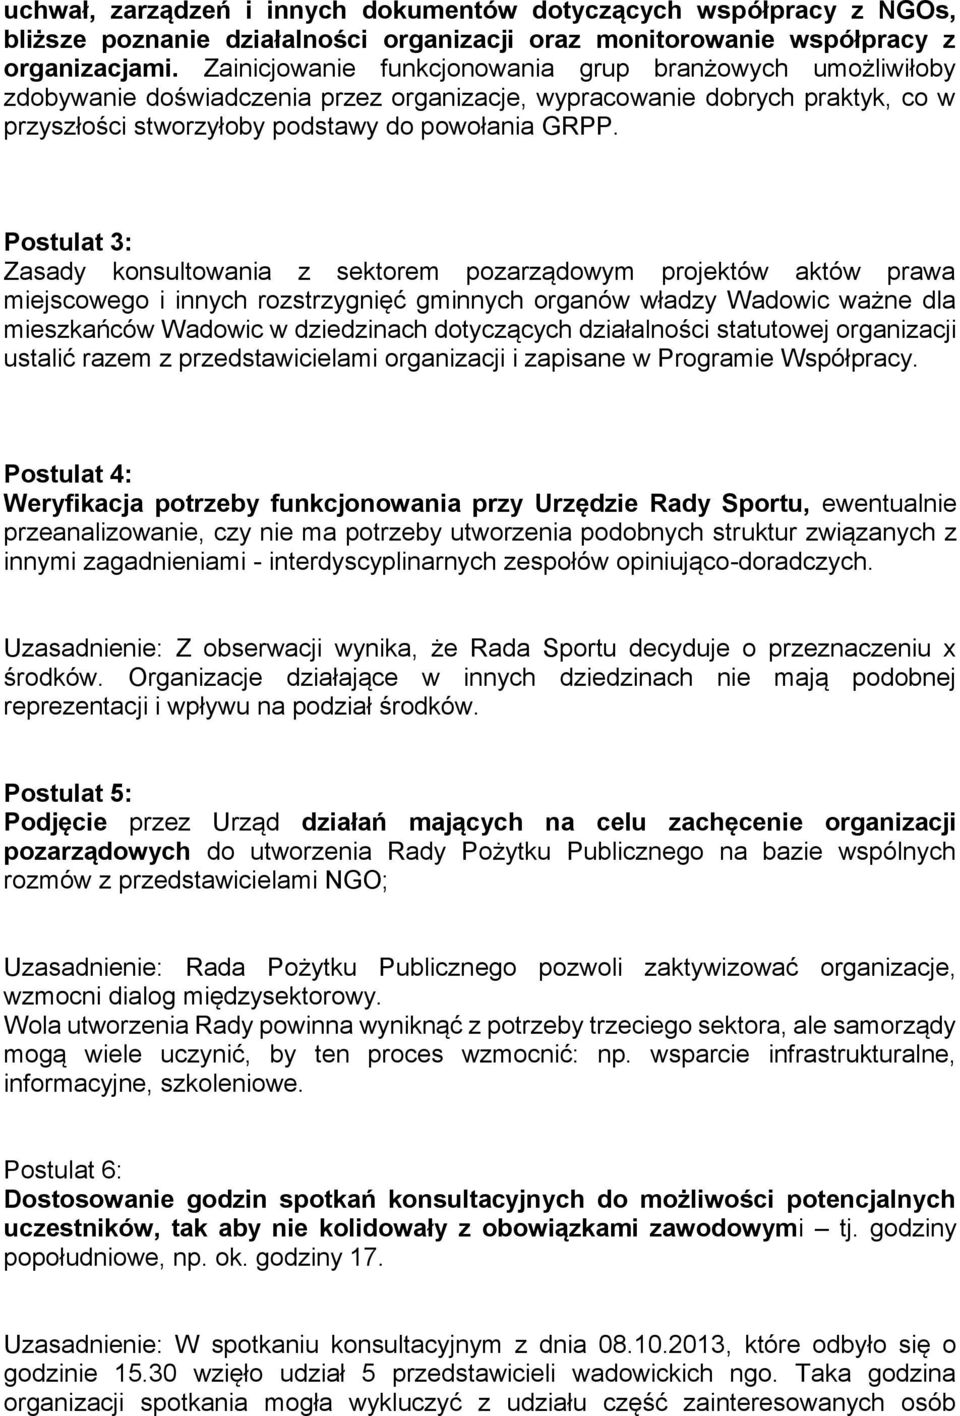 Postulat 3: Zasady konsultowania z sektorem pozarządowym projektów aktów prawa miejscowego i innych rozstrzygnięć gminnych organów władzy Wadowic ważne dla mieszkańców Wadowic w dziedzinach